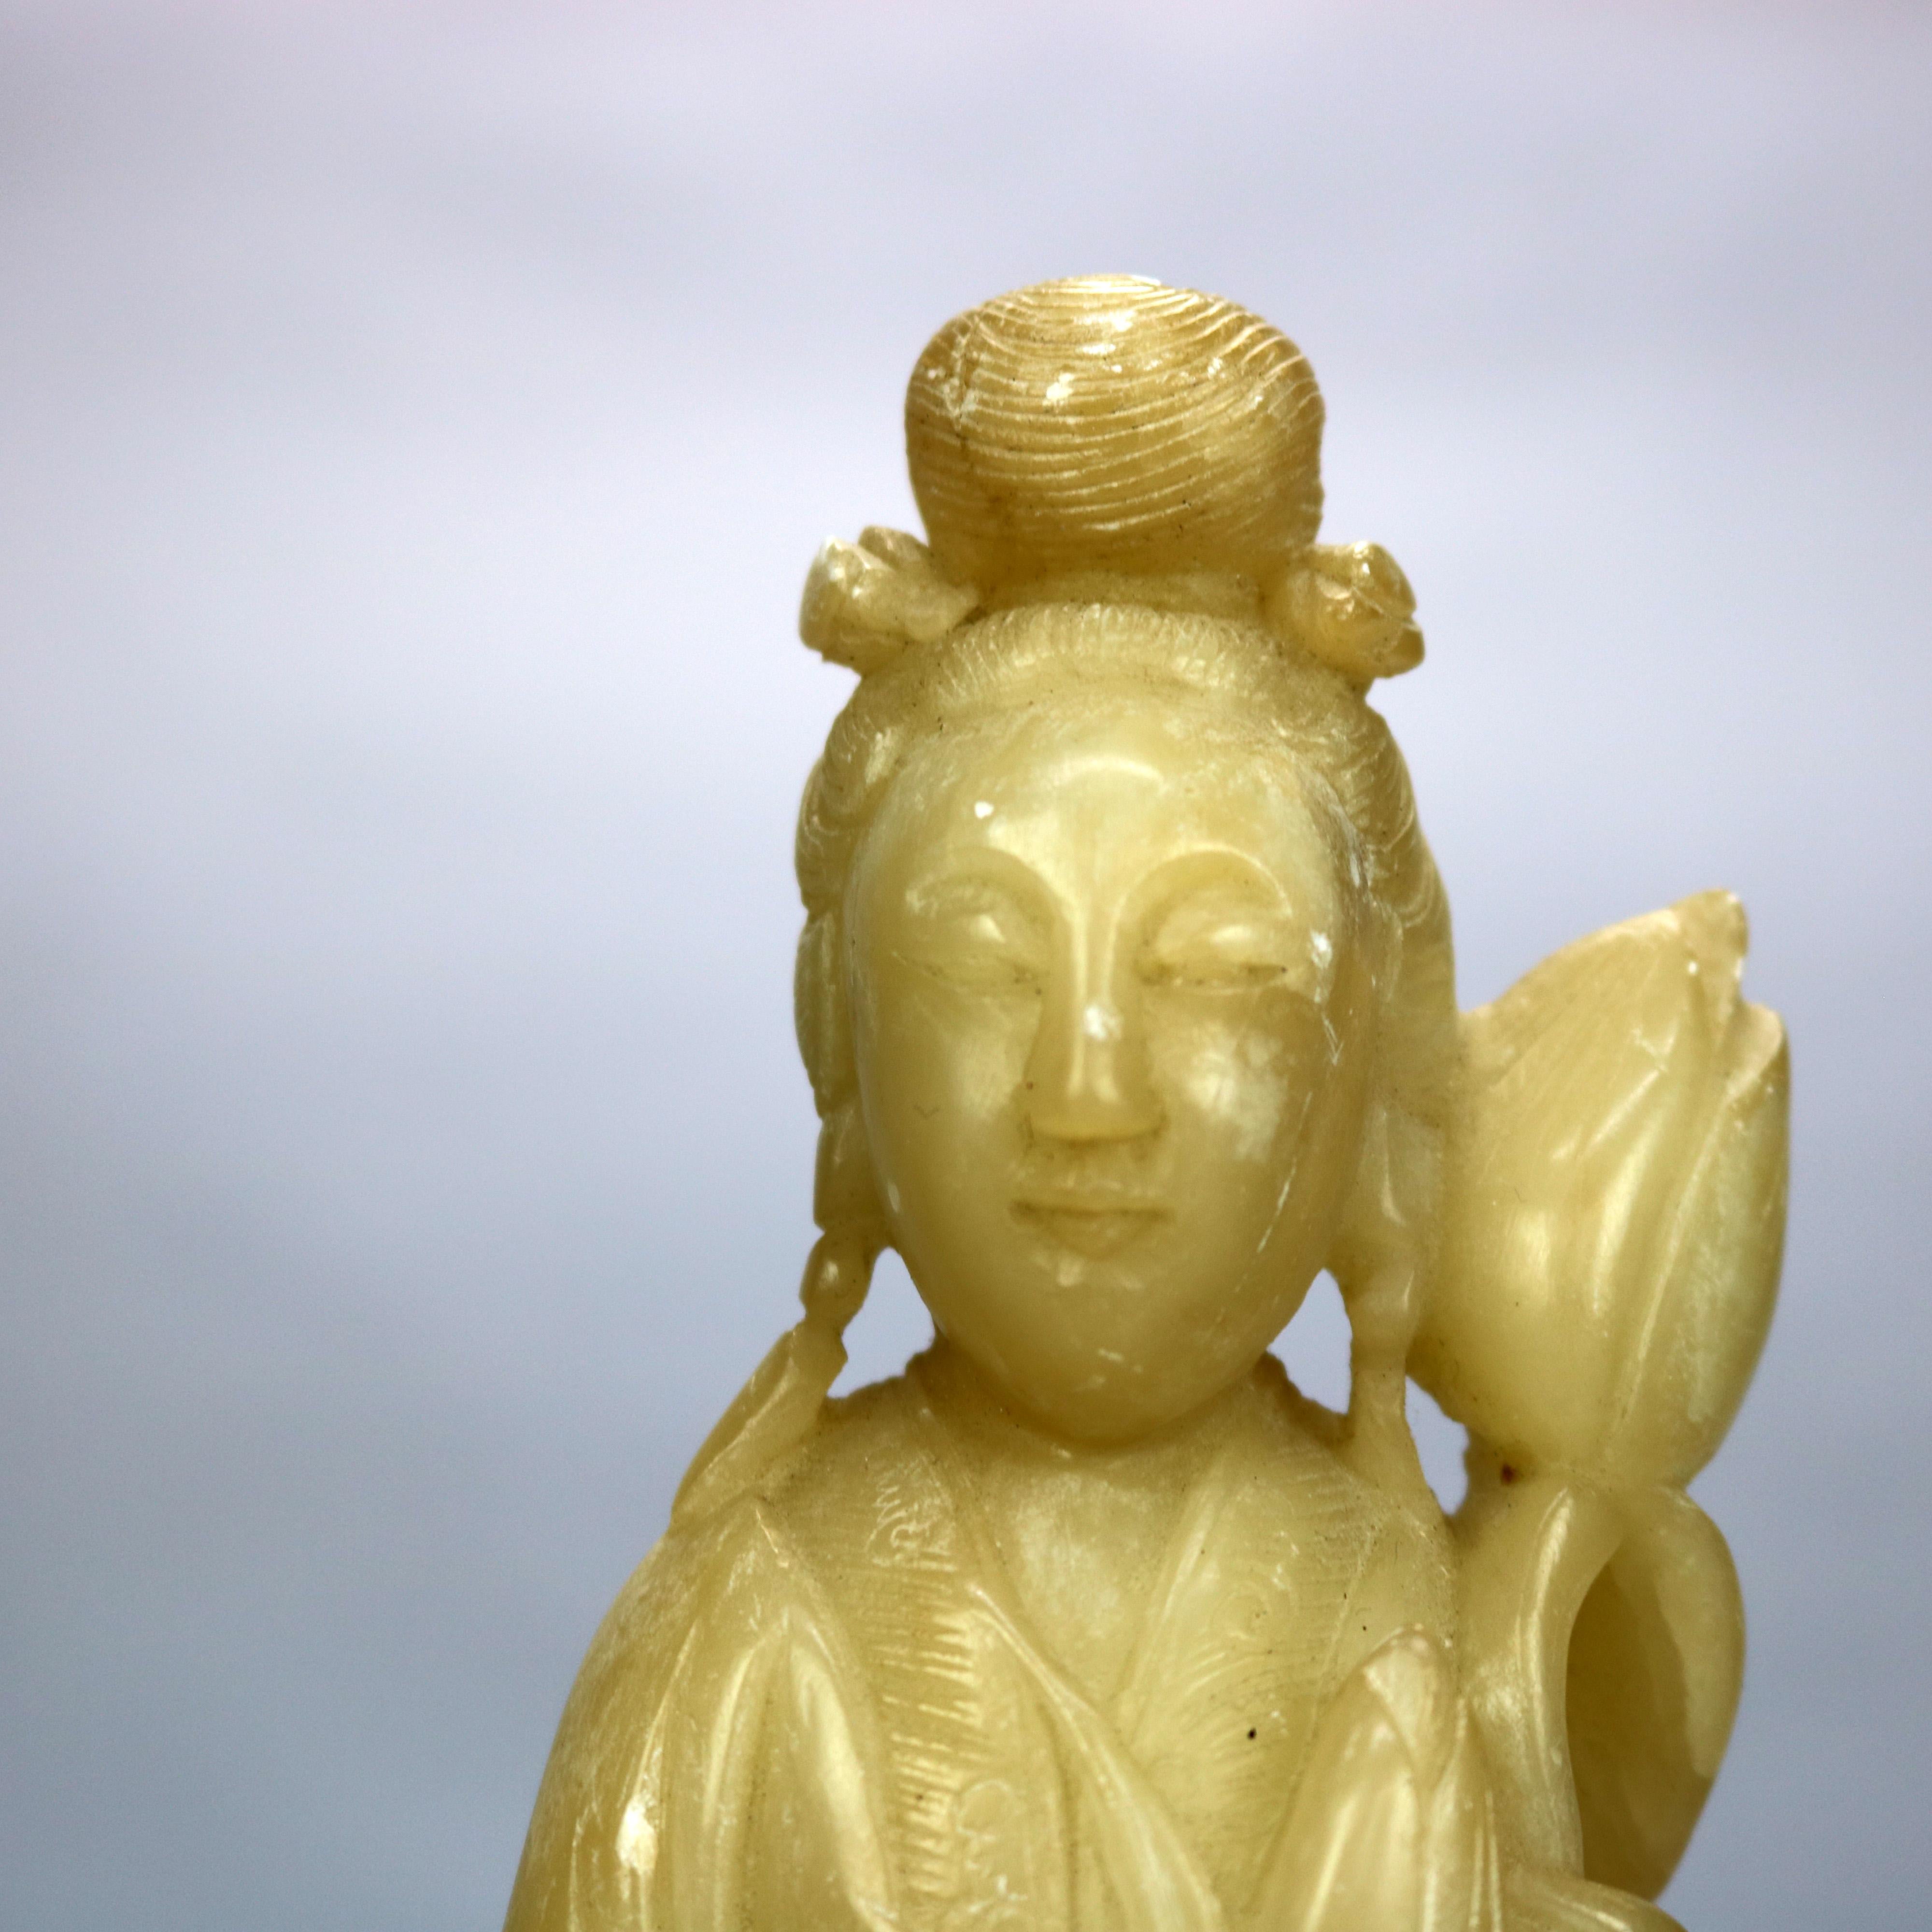 Ein antiker asiatischer Buddha bietet eine geschnitzte Specksteinfigur einer stehenden Frau mit Blume, sitzend auf einem geschnitzten Hartholzsockel, um 1910

Maße: 13.25